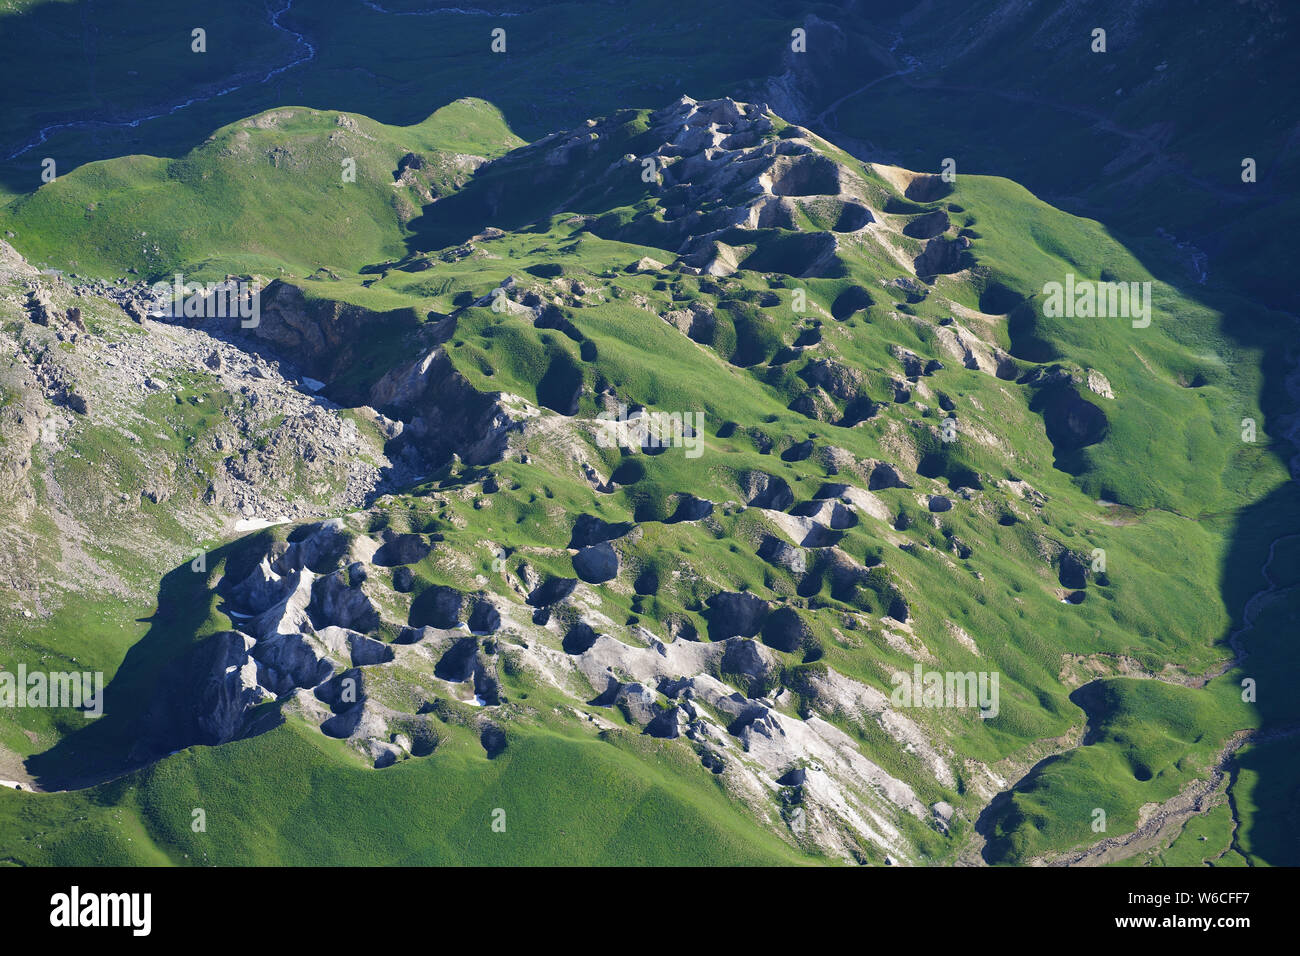 VISTA AEREA. Grande campo (lunghezza: 750m) di fori di sinuo (diametro: Fino a 30m) in una roccia gessifosa. Les Gypsières, Valloire, Savoia, Francia. Foto Stock